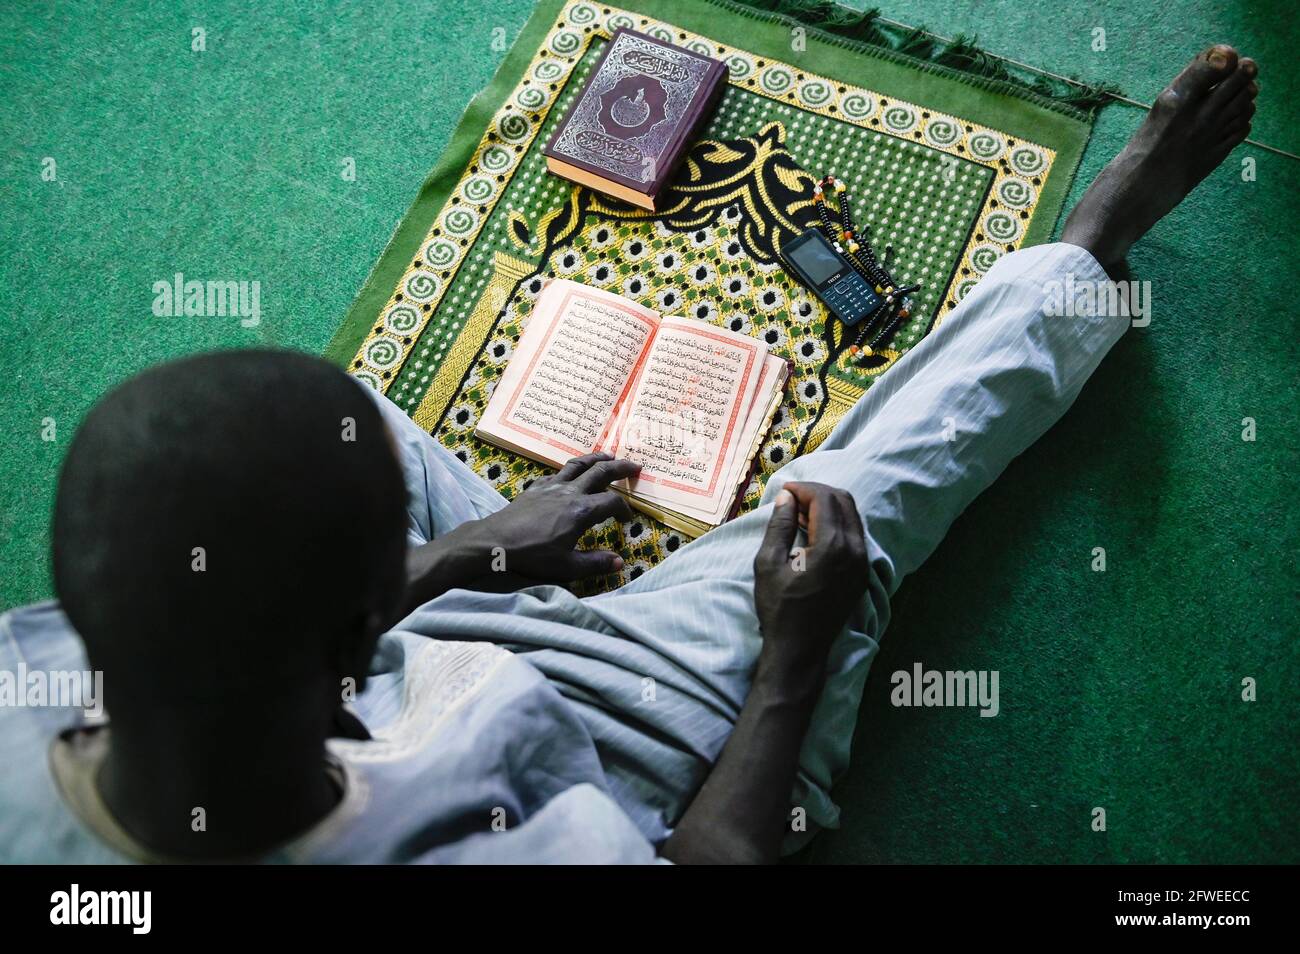 MALI, Kayes, mezquita, musulmán sentado en la alfombra de oración y lee un libro islámico / Moschee, auf musulmán Gebetsteppich im Gebet Foto de stock